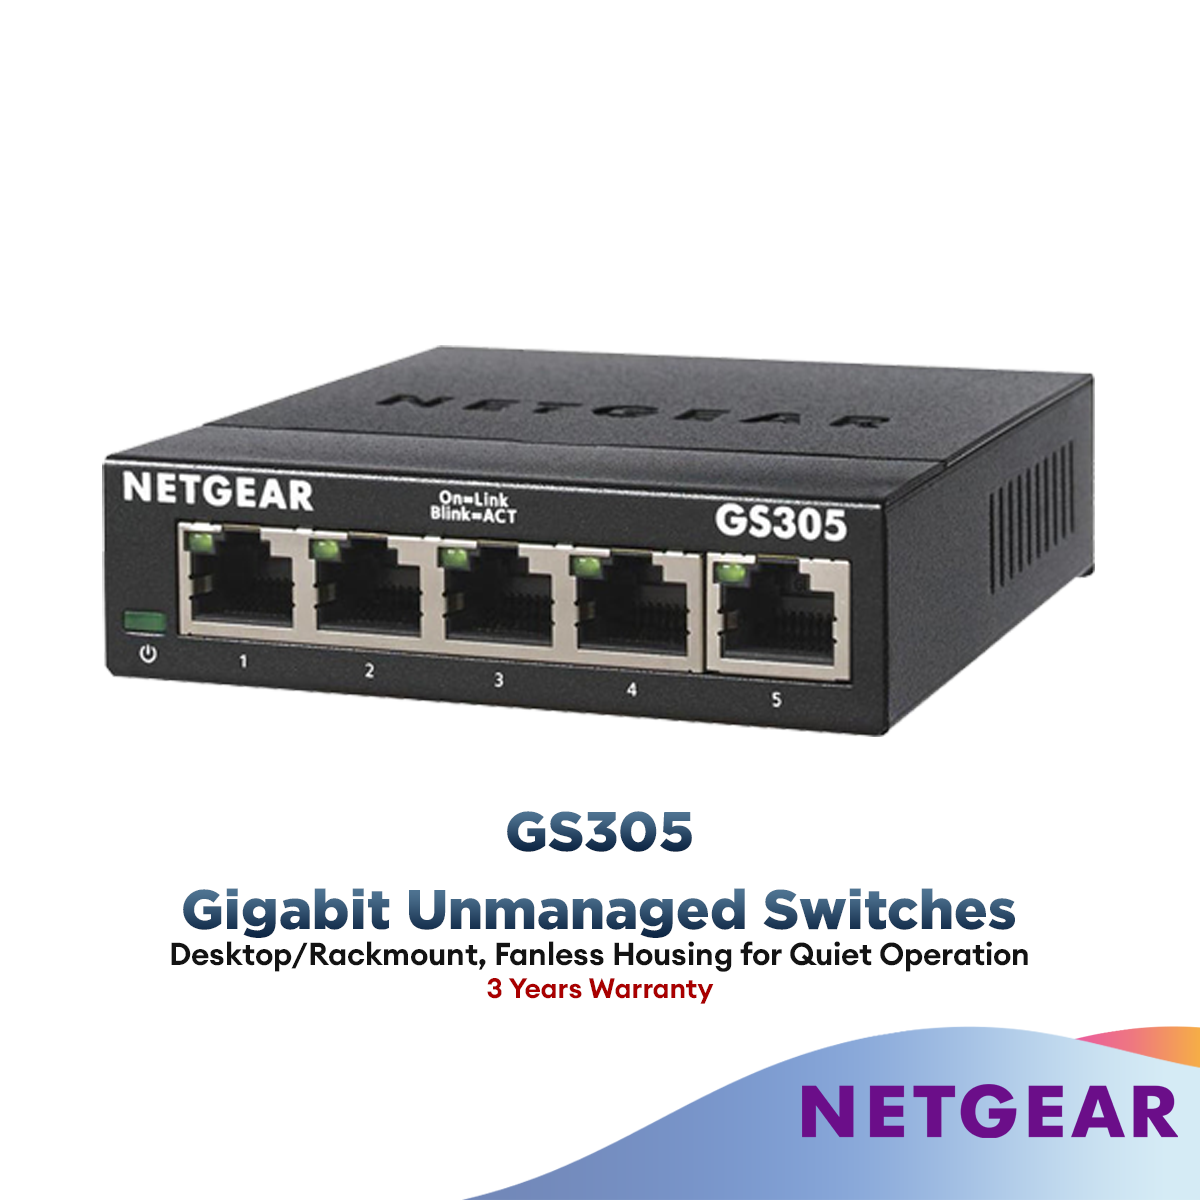 NETGEAR GS305v3 5 Port Gigabit Ethernet Unmanaged Switch